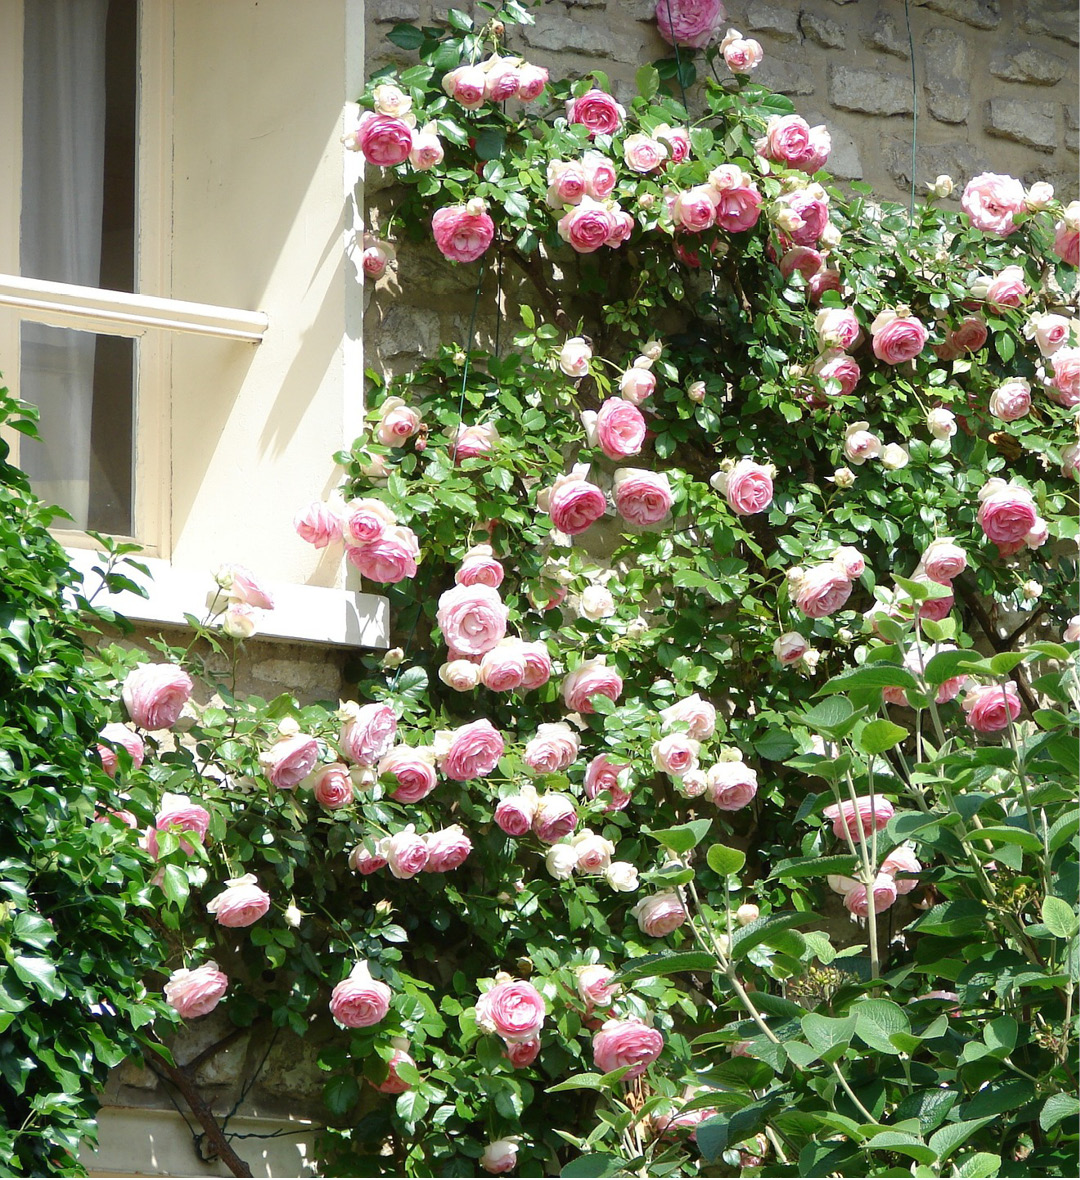 Rosier grimpant en fleur qui décore un mur. On peut voir de magnifiques fleurs blanches et roses près d'une fenêtre à l'étage